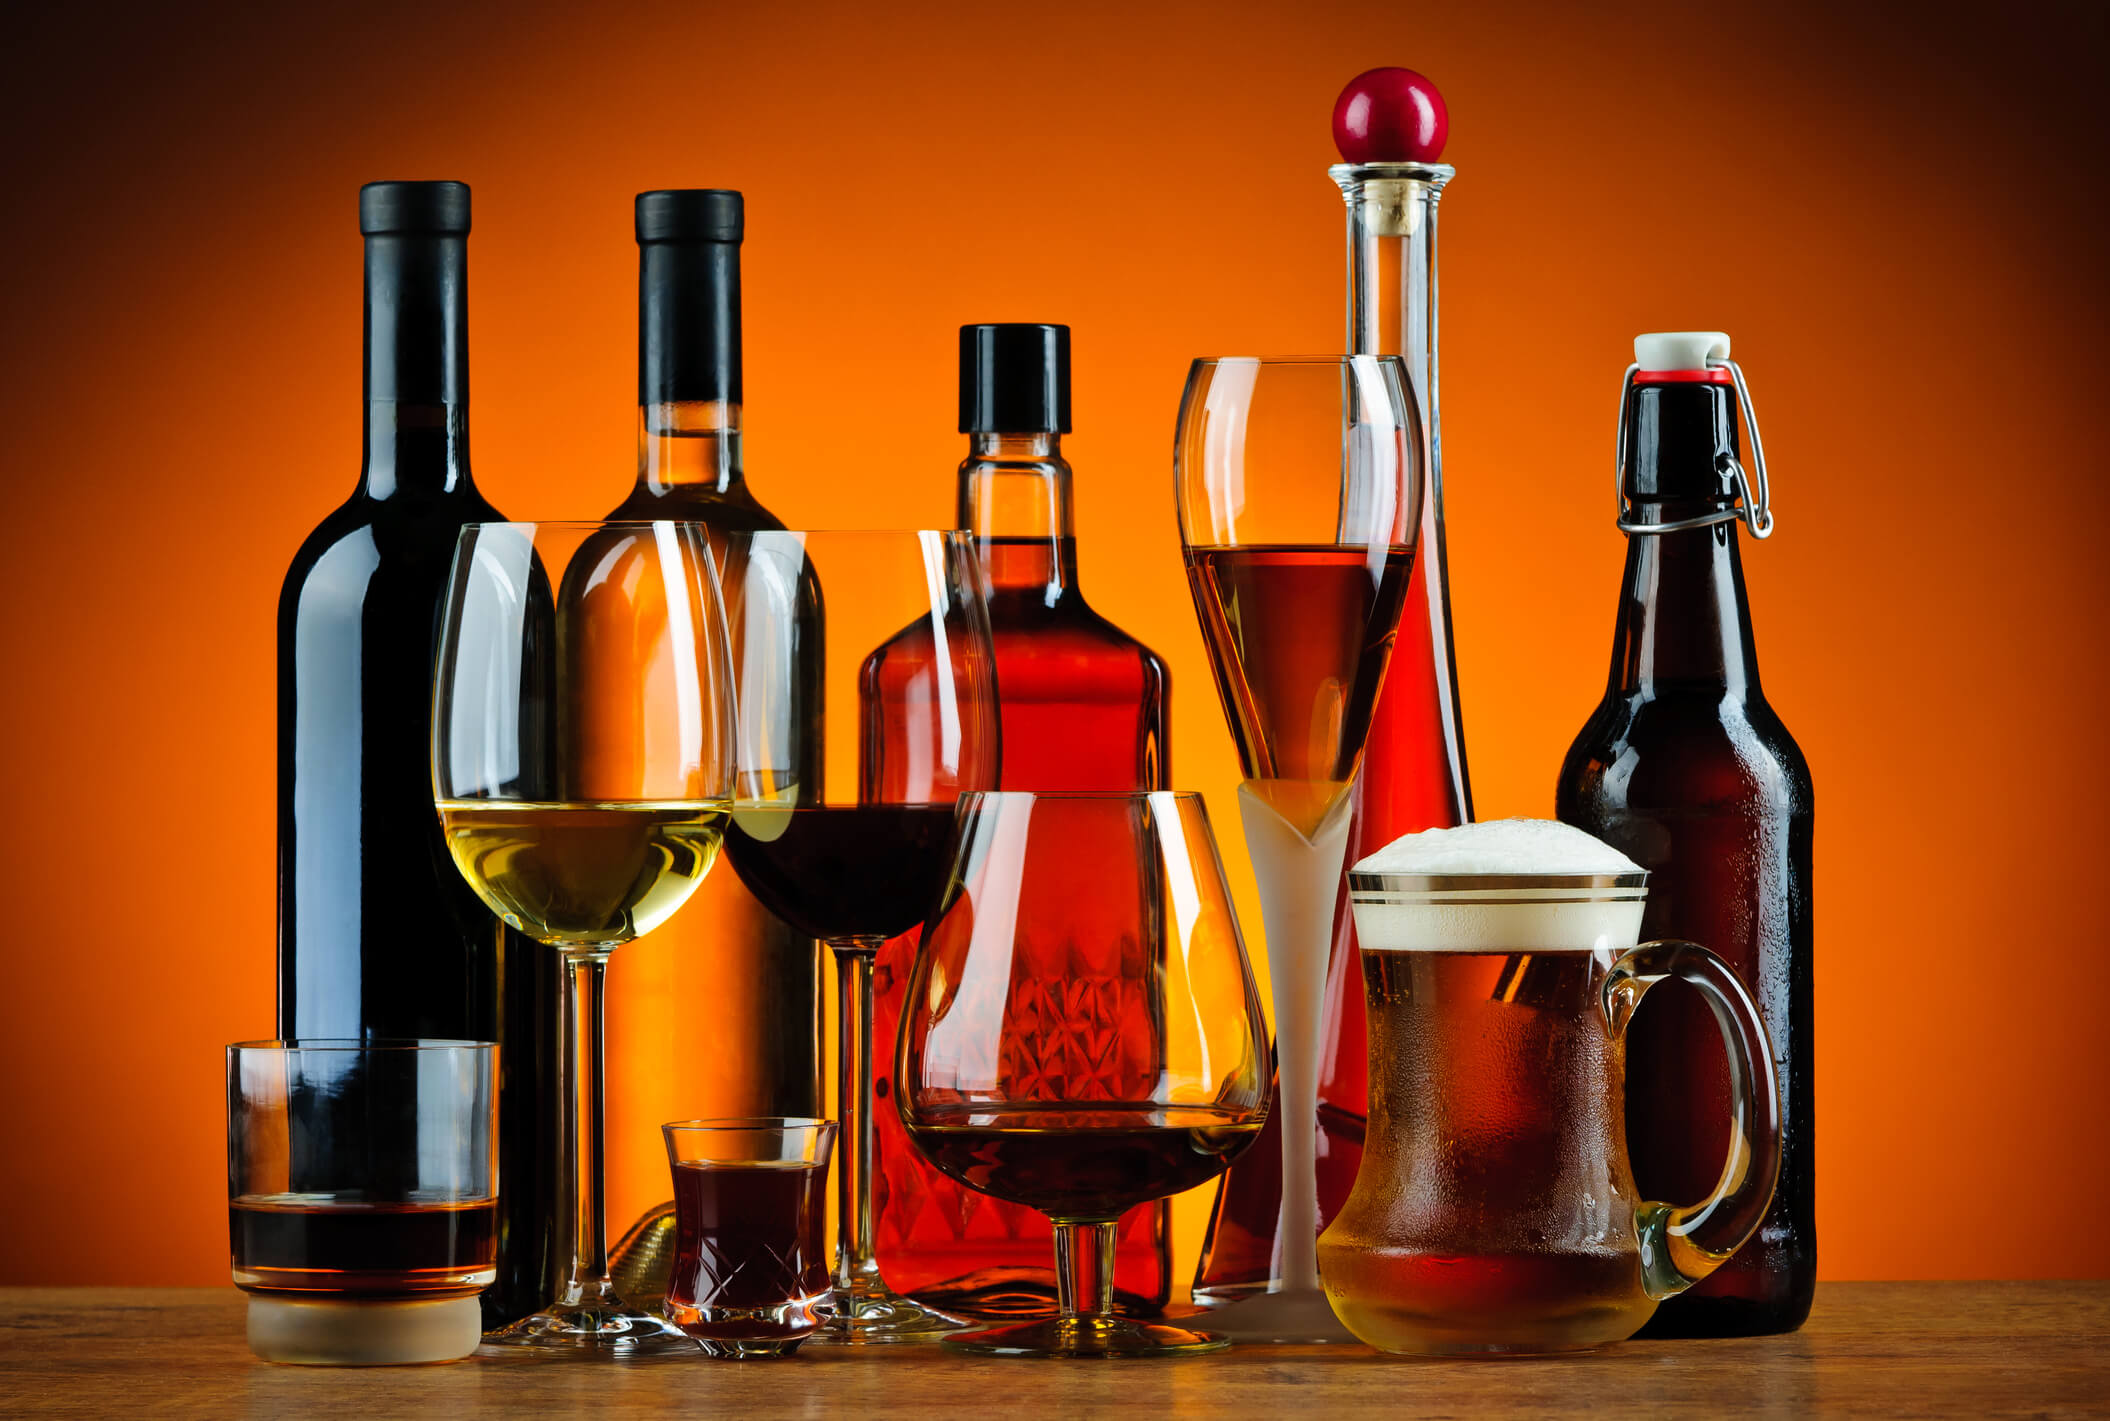 शराब के अपने स्टॉक की रोज़ाना जांच करना यह दर्शाता है कि आपको शराब की लत लग चुकी है